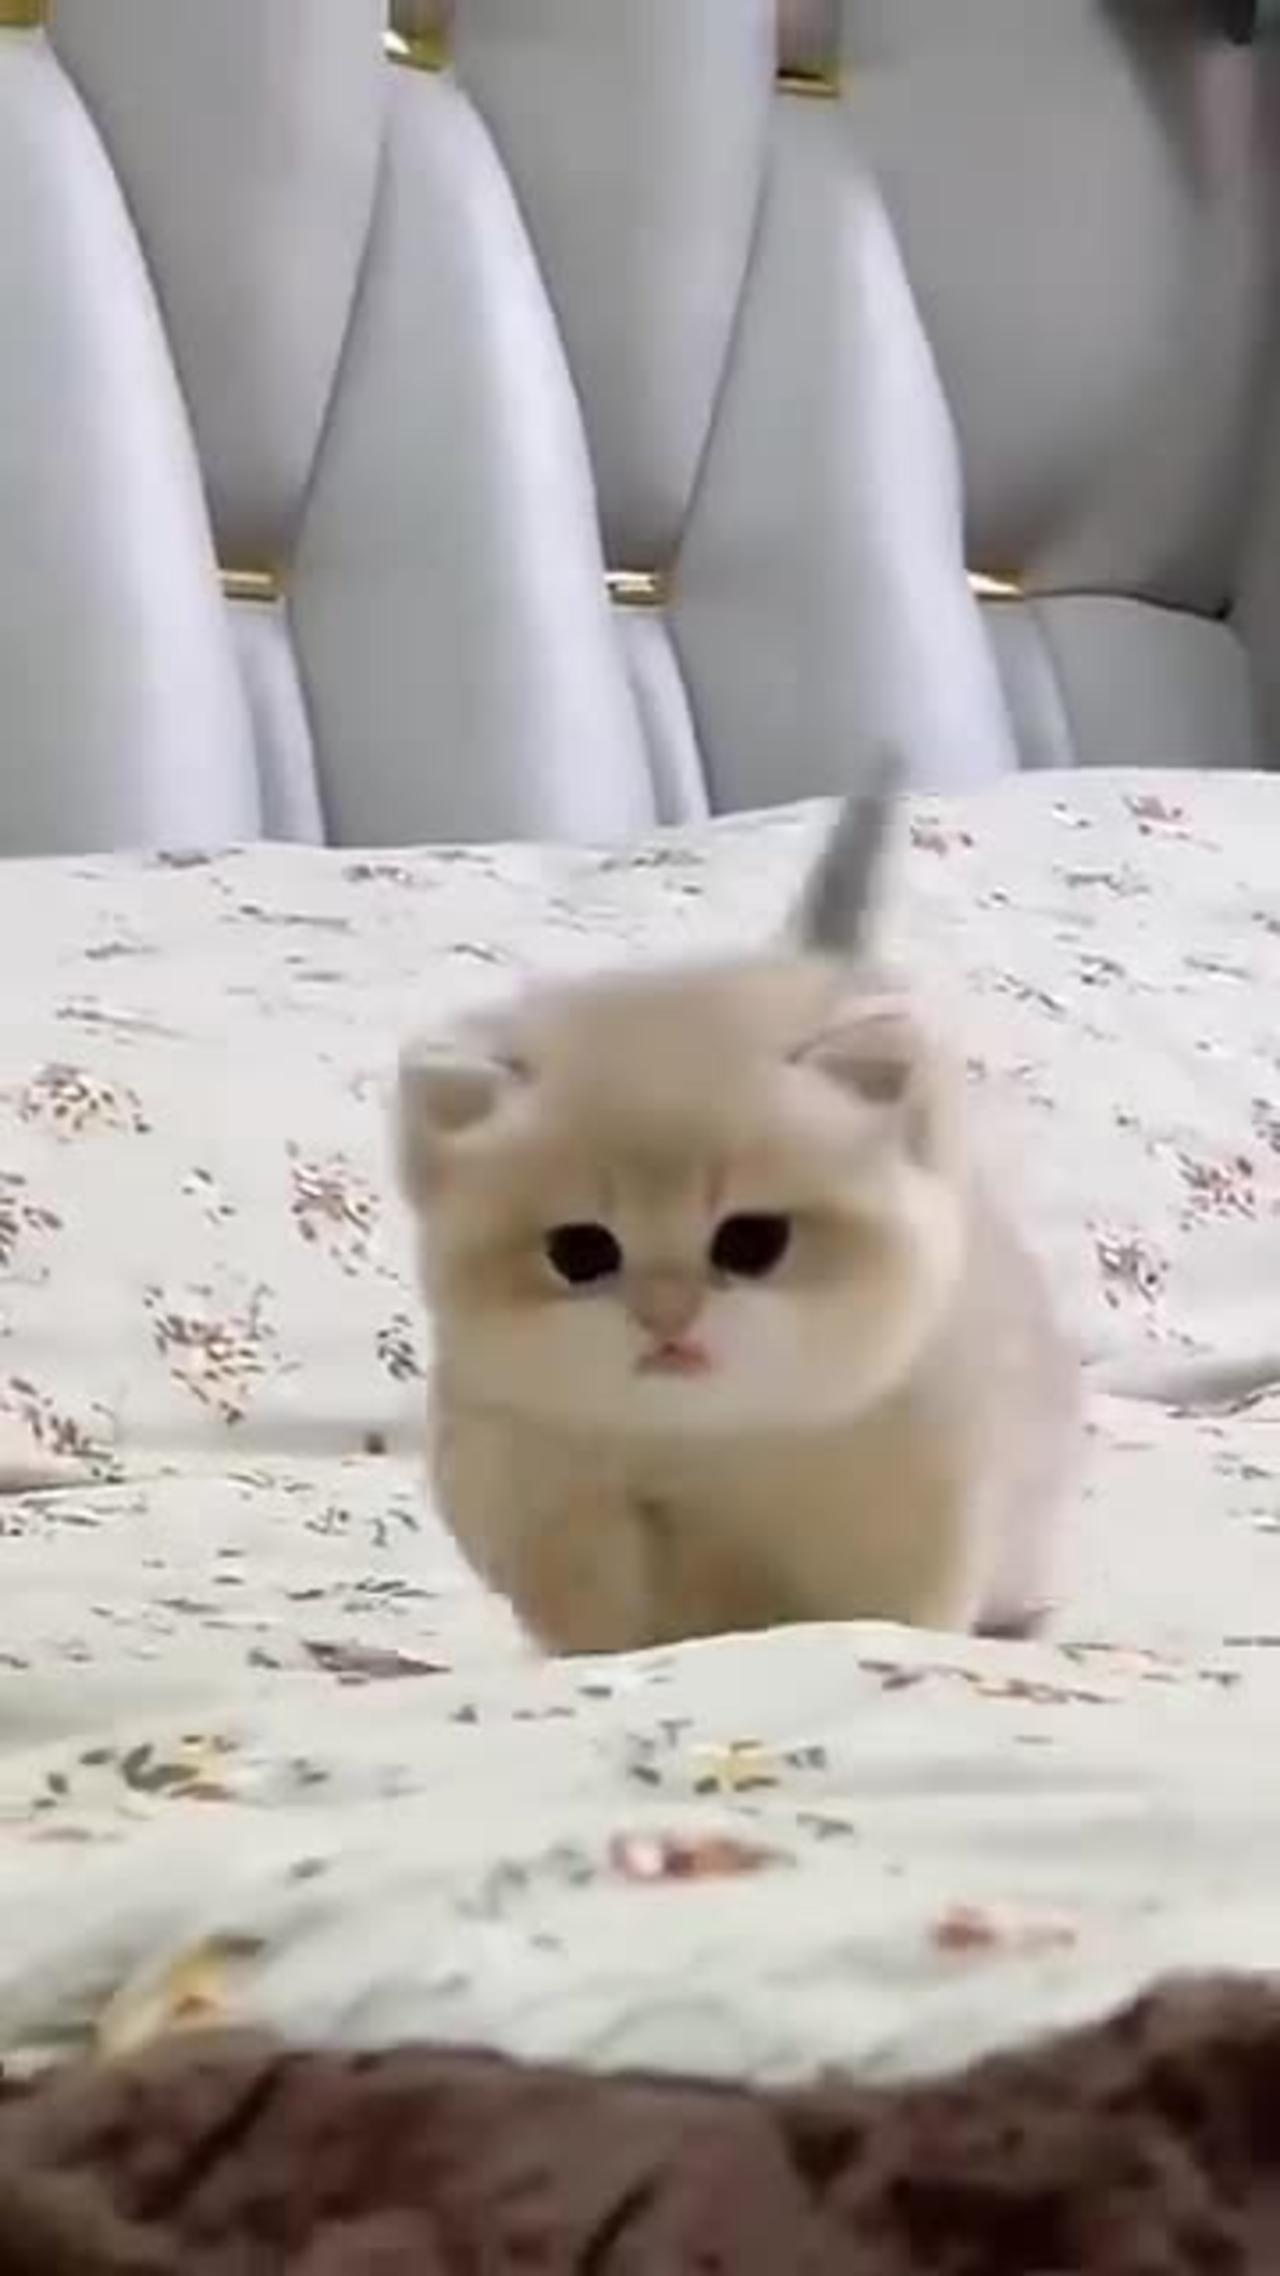 Cutie baby kittens sound 😺